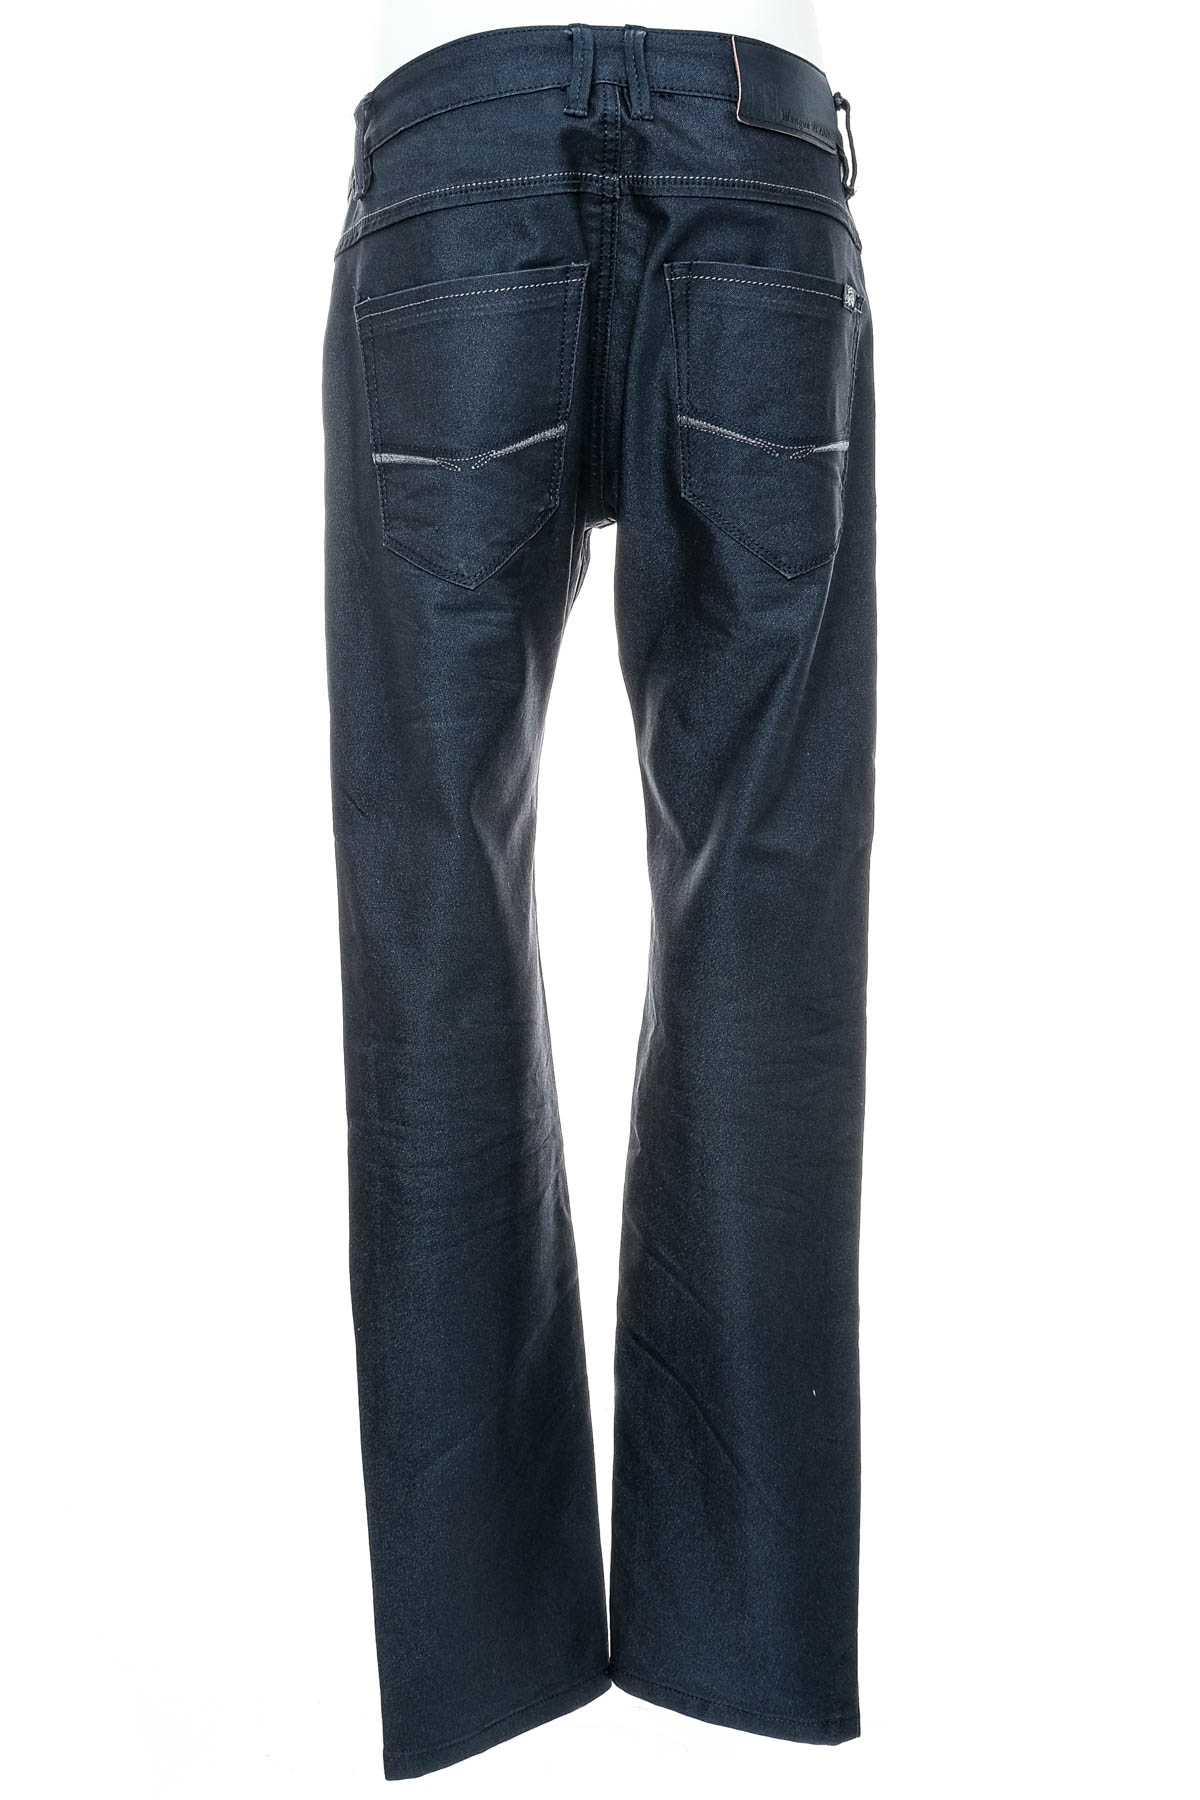 Pantalon pentru bărbați - WANGU JEANS - 1